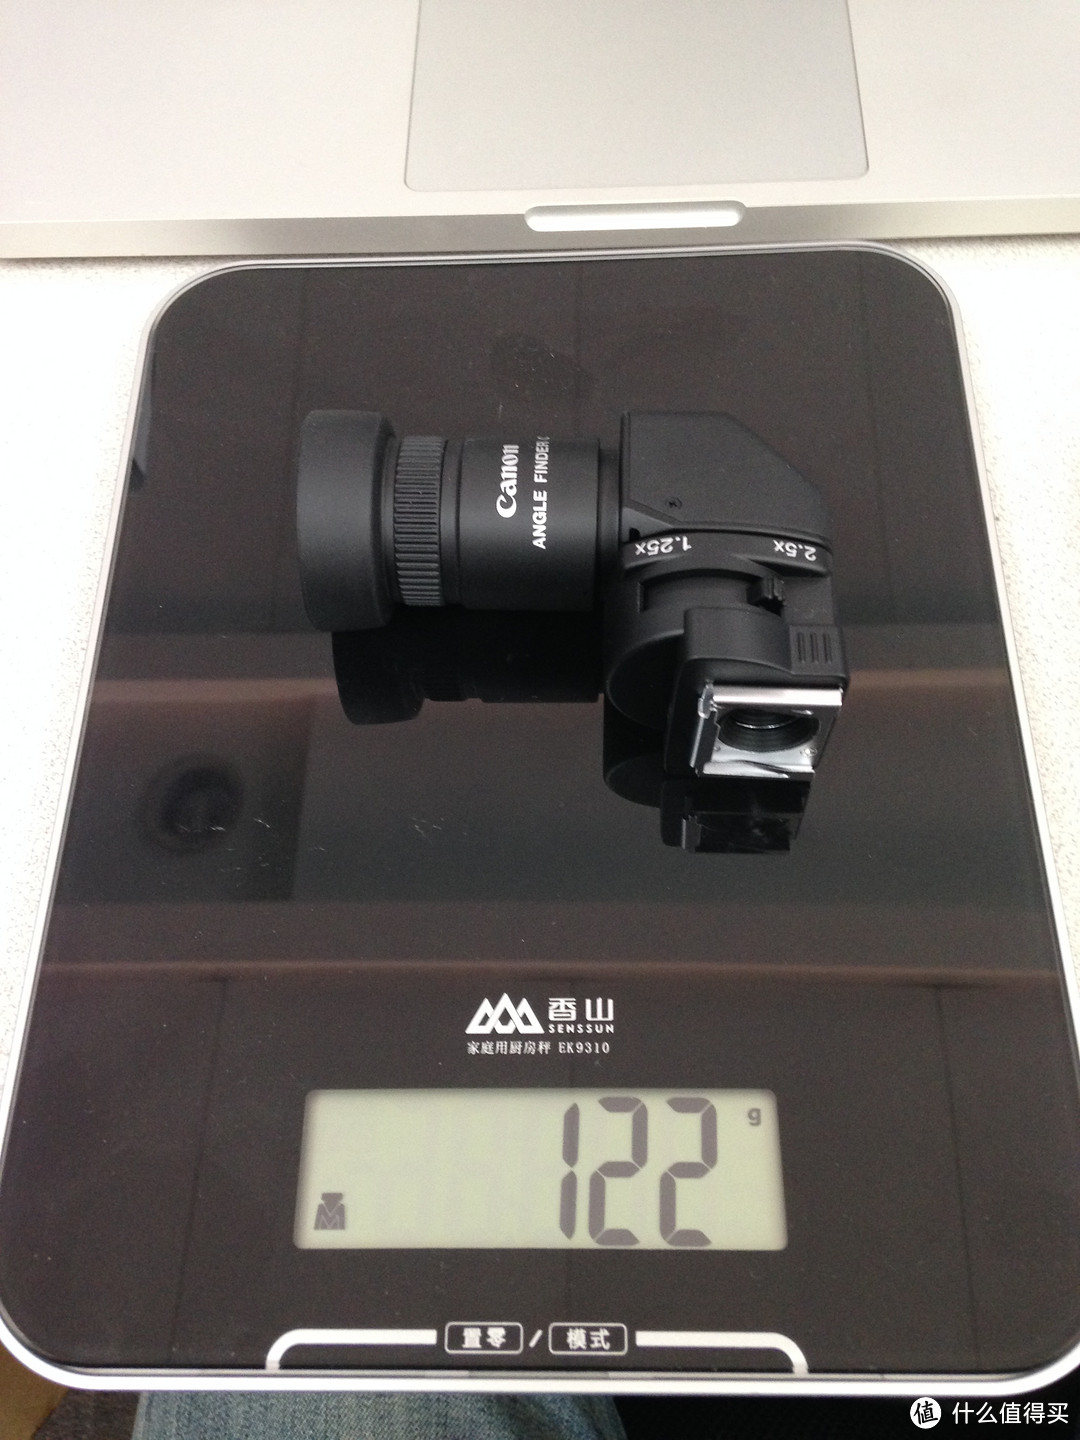 #本站首晒# Canon EOS周边附件 — 弯角取景器C和引闪器ST-E3-RT